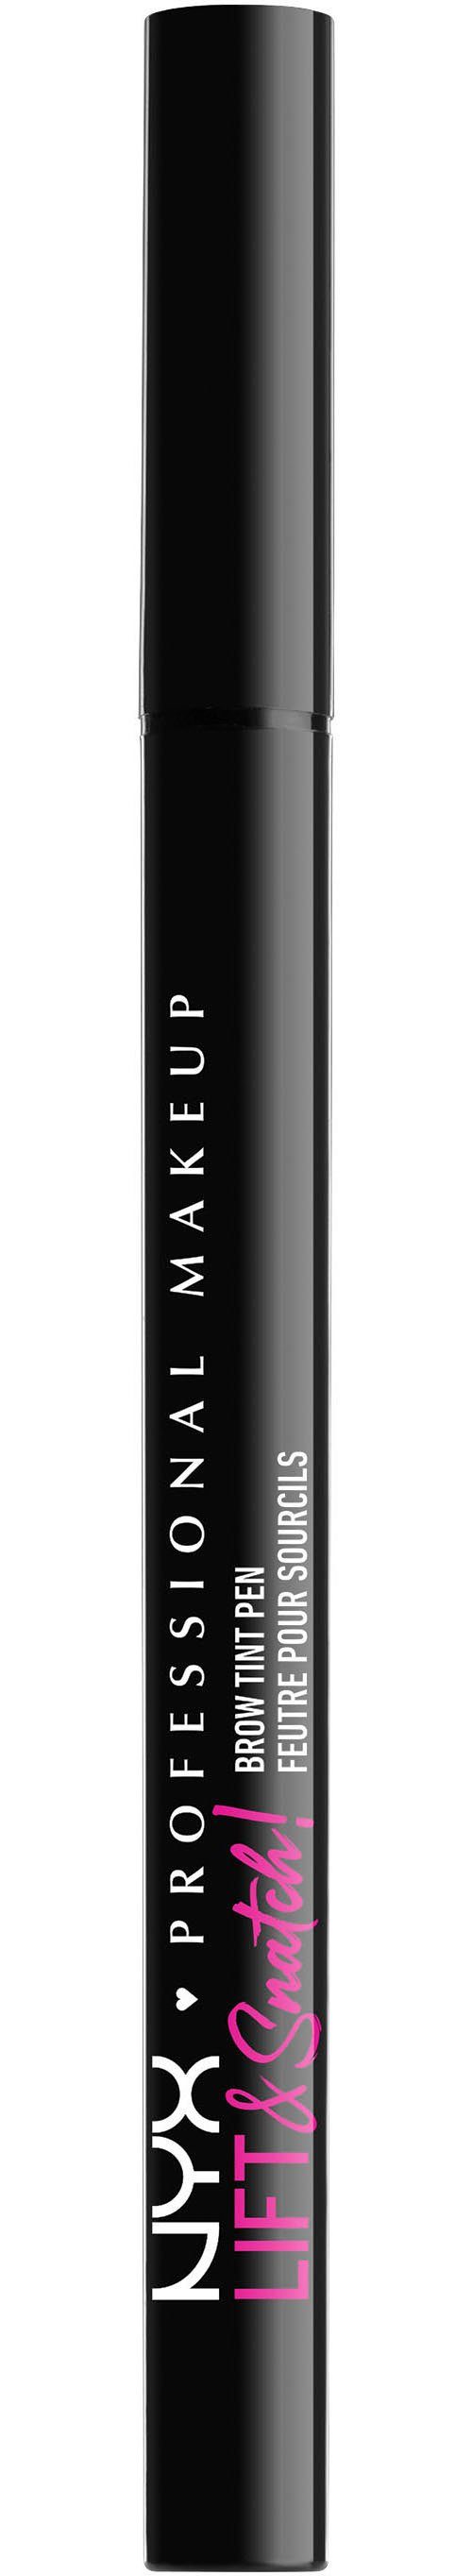 NYX Augenbrauen-Stift Professional Makeup Lift brunette Tint & Pen Brow Snatch